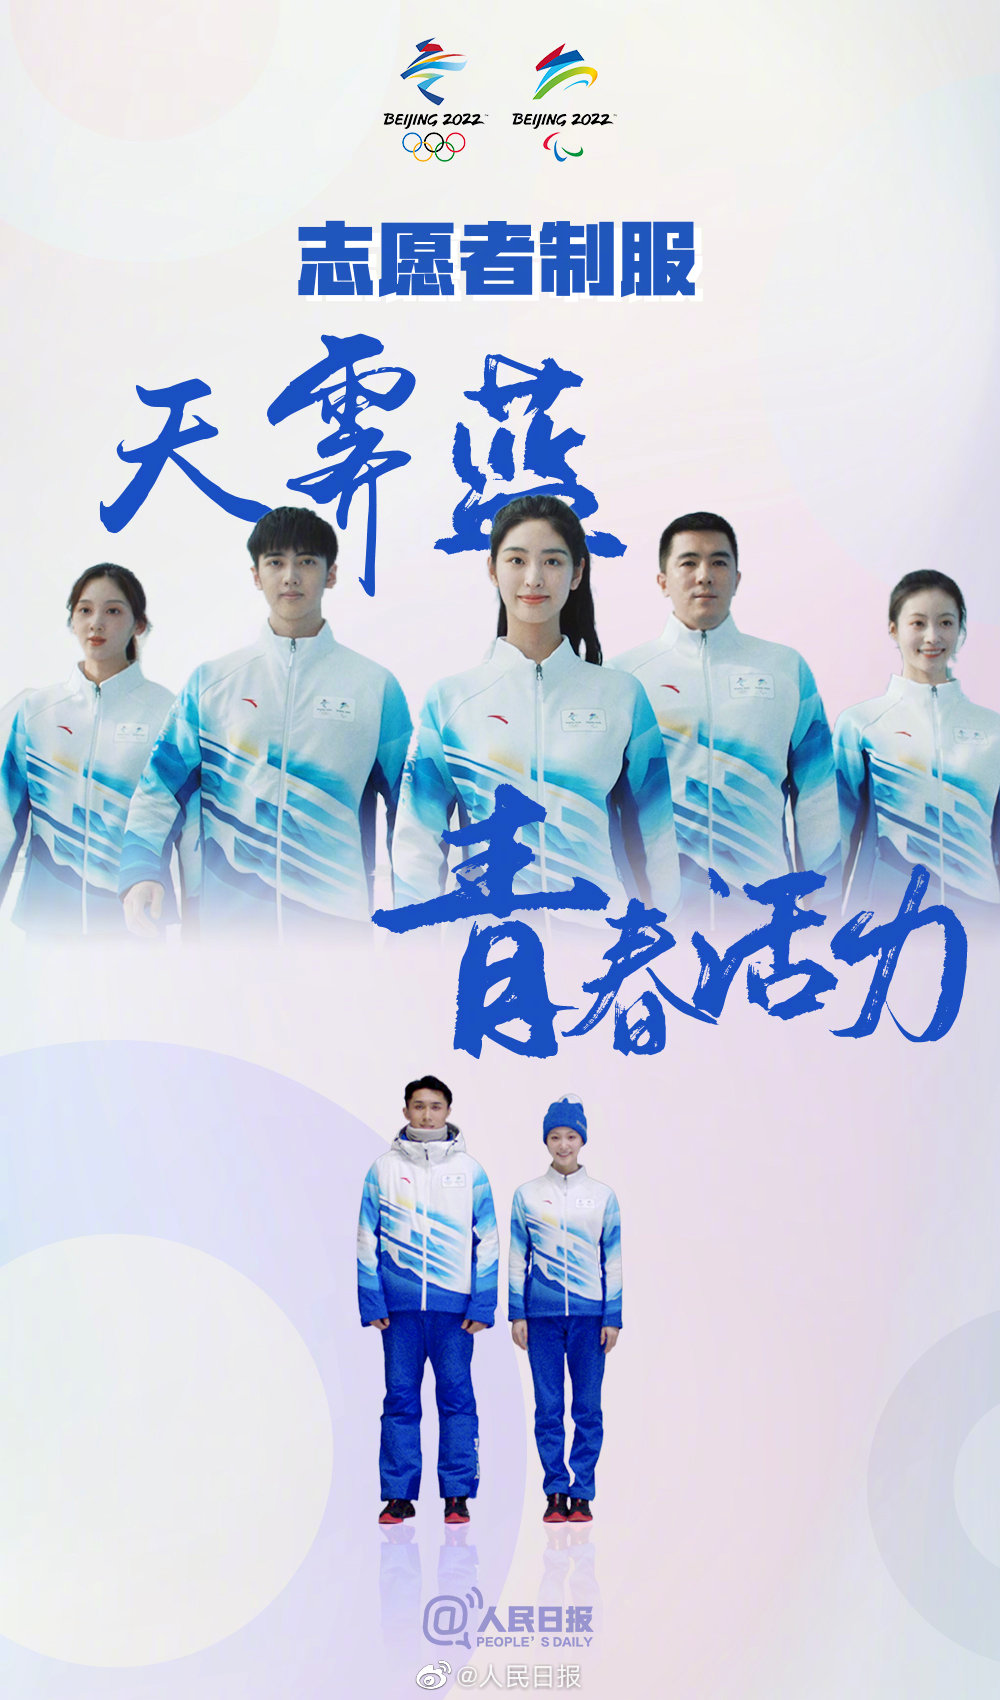 北京冬季五輪公式ウェアは中国の水墨画をイメージしたカラー